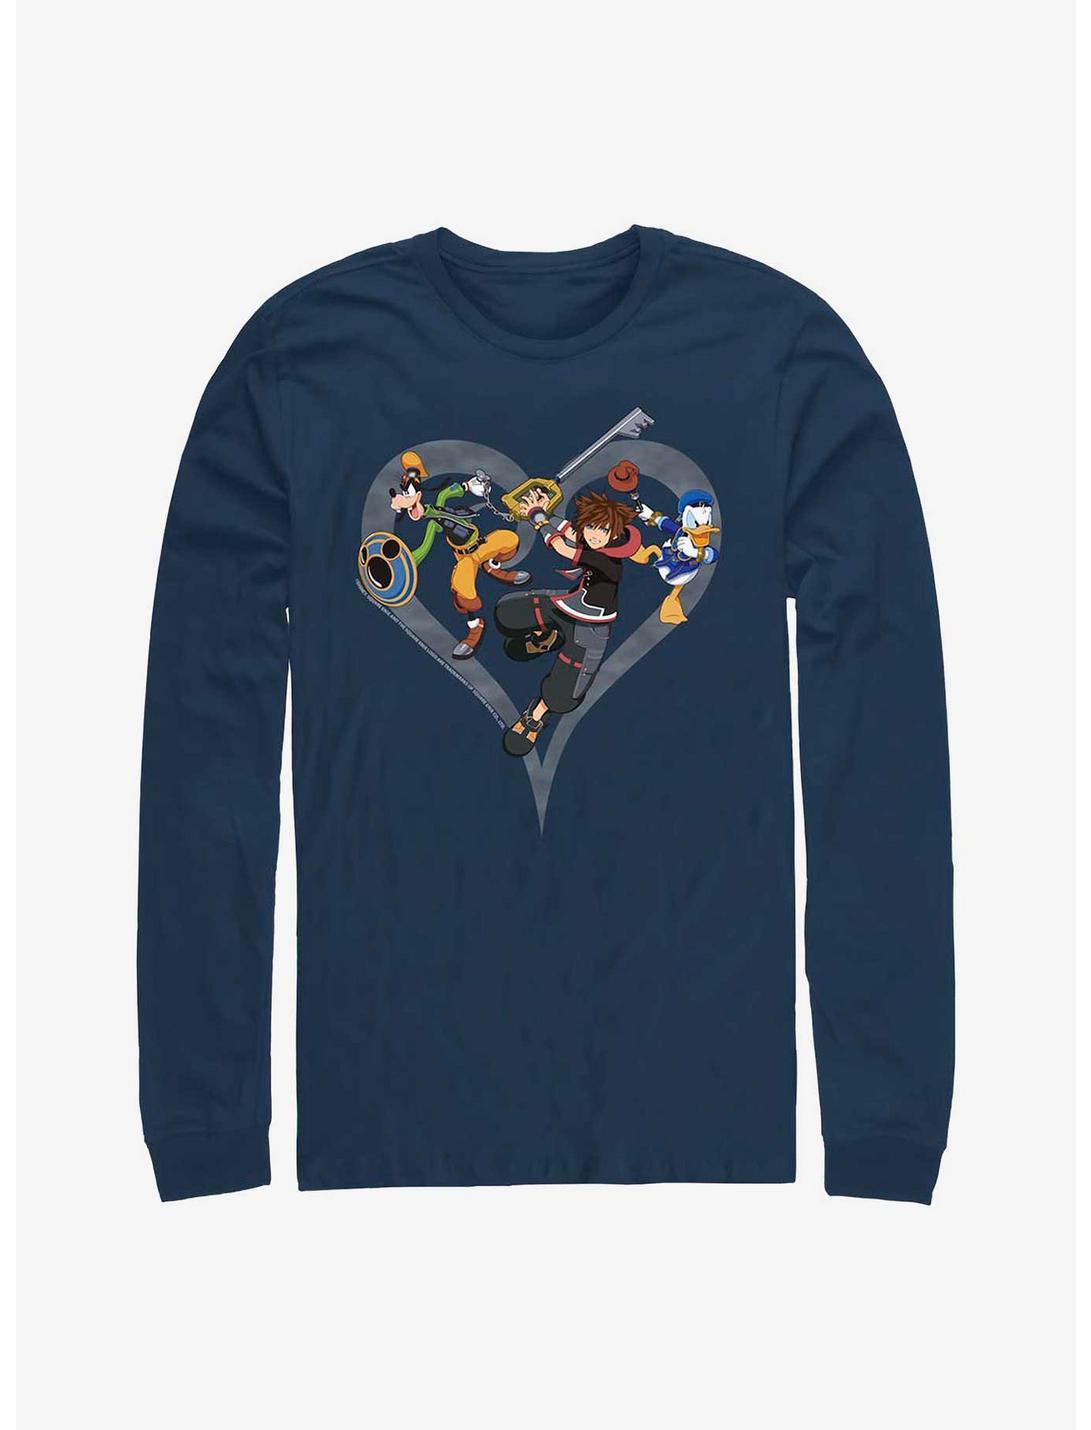 Disney Kingdom Hearts Sora Goofy Donald Long-Sleeve T-Shirt, NAVY, hi-res